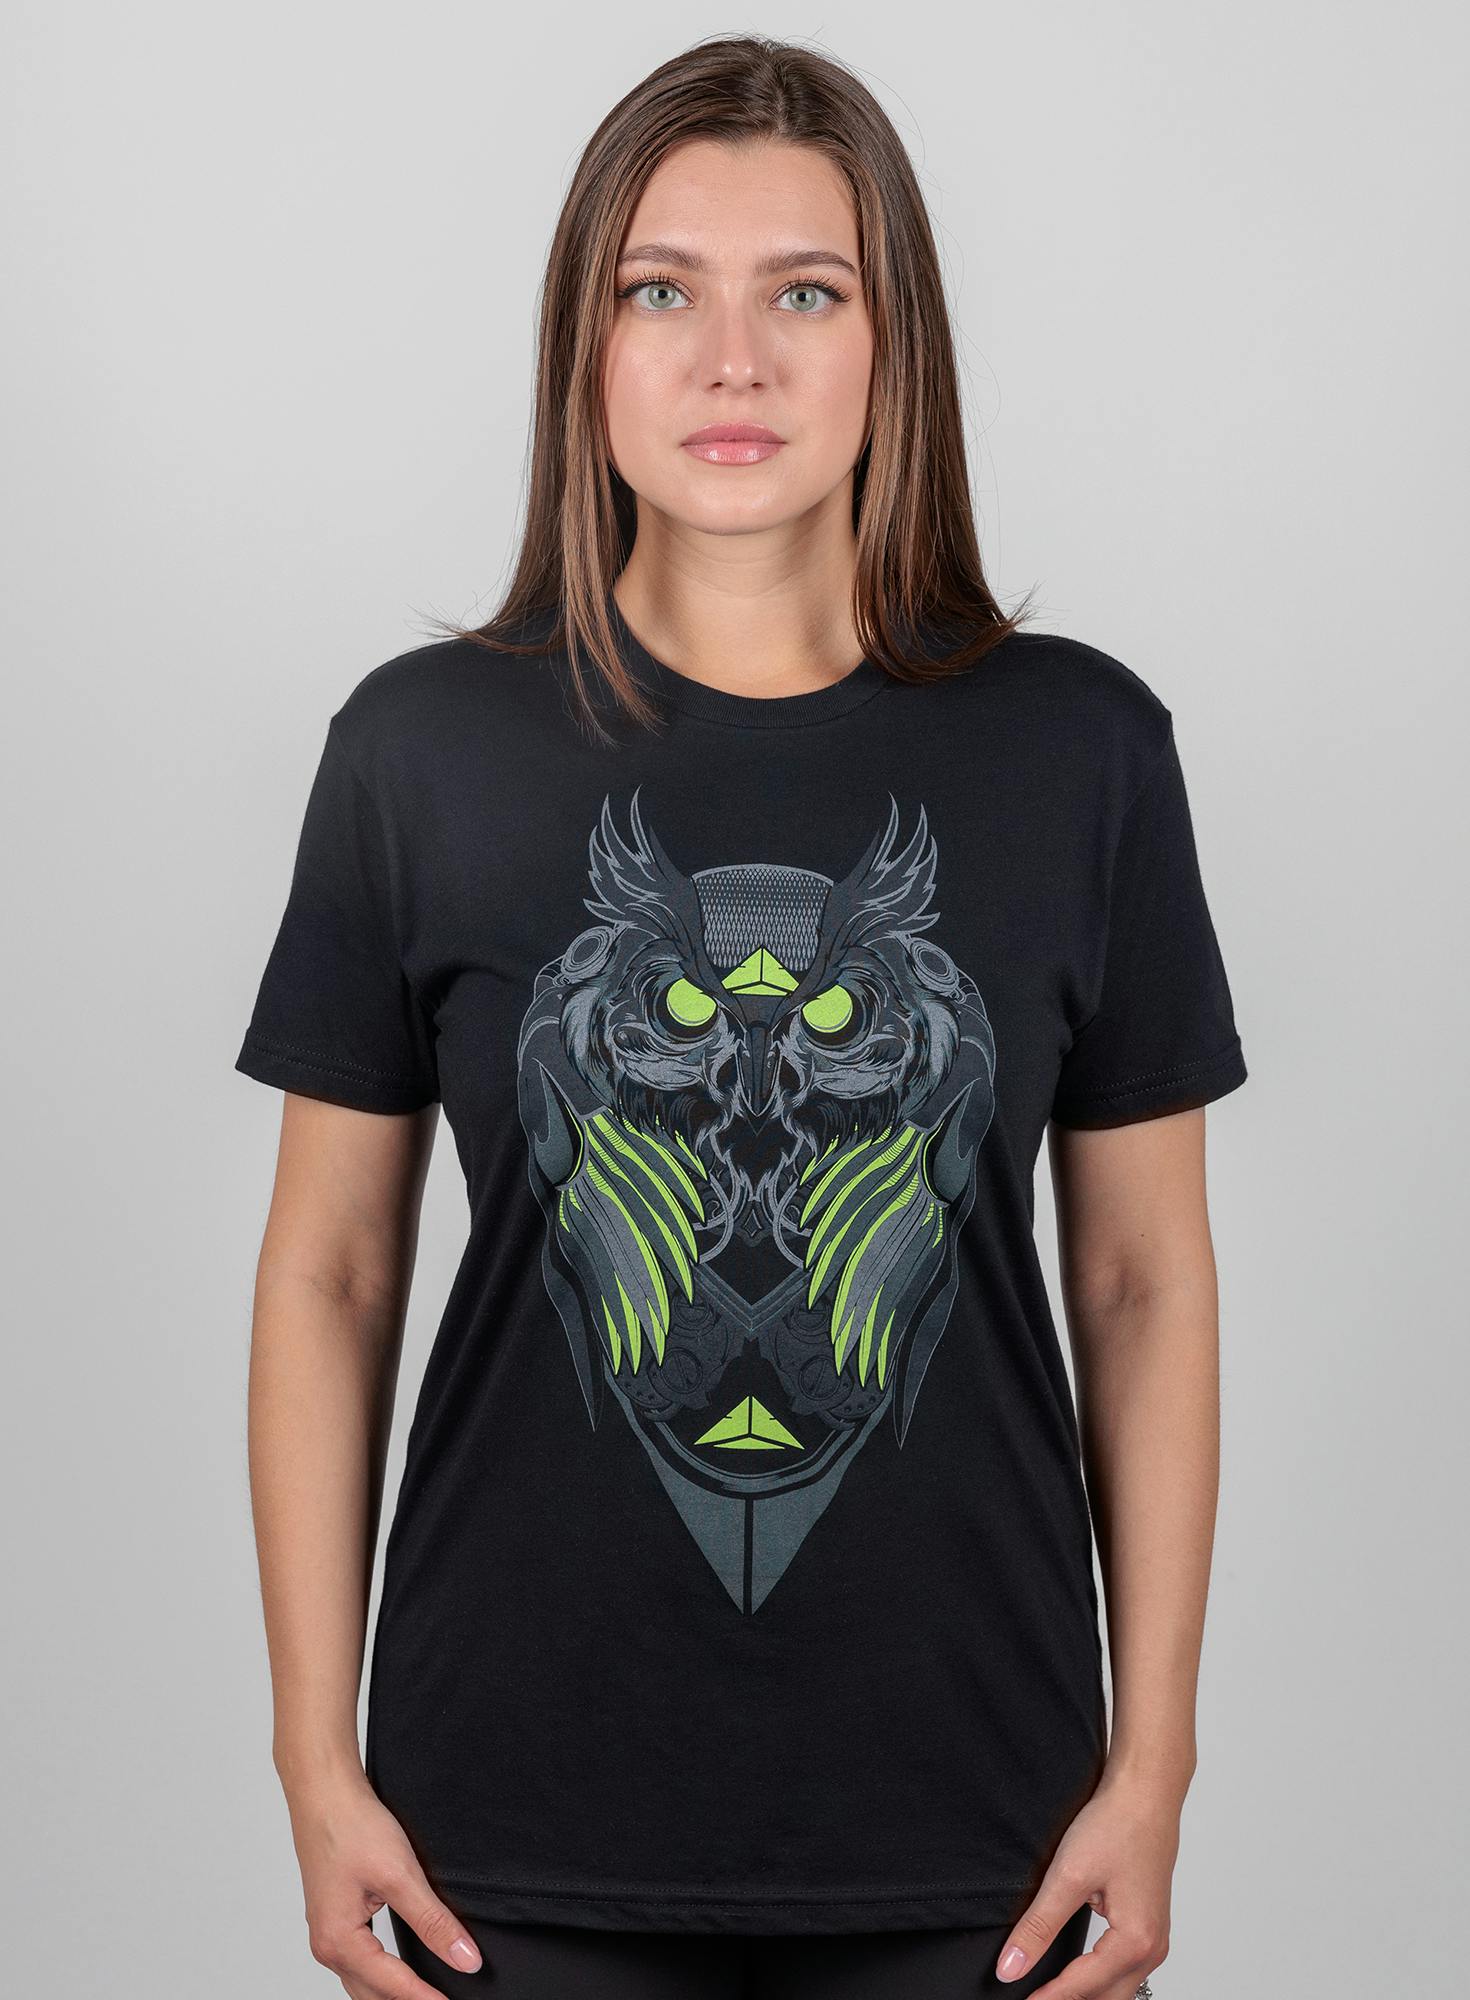 Night Owl T-Shirt Bonus Image